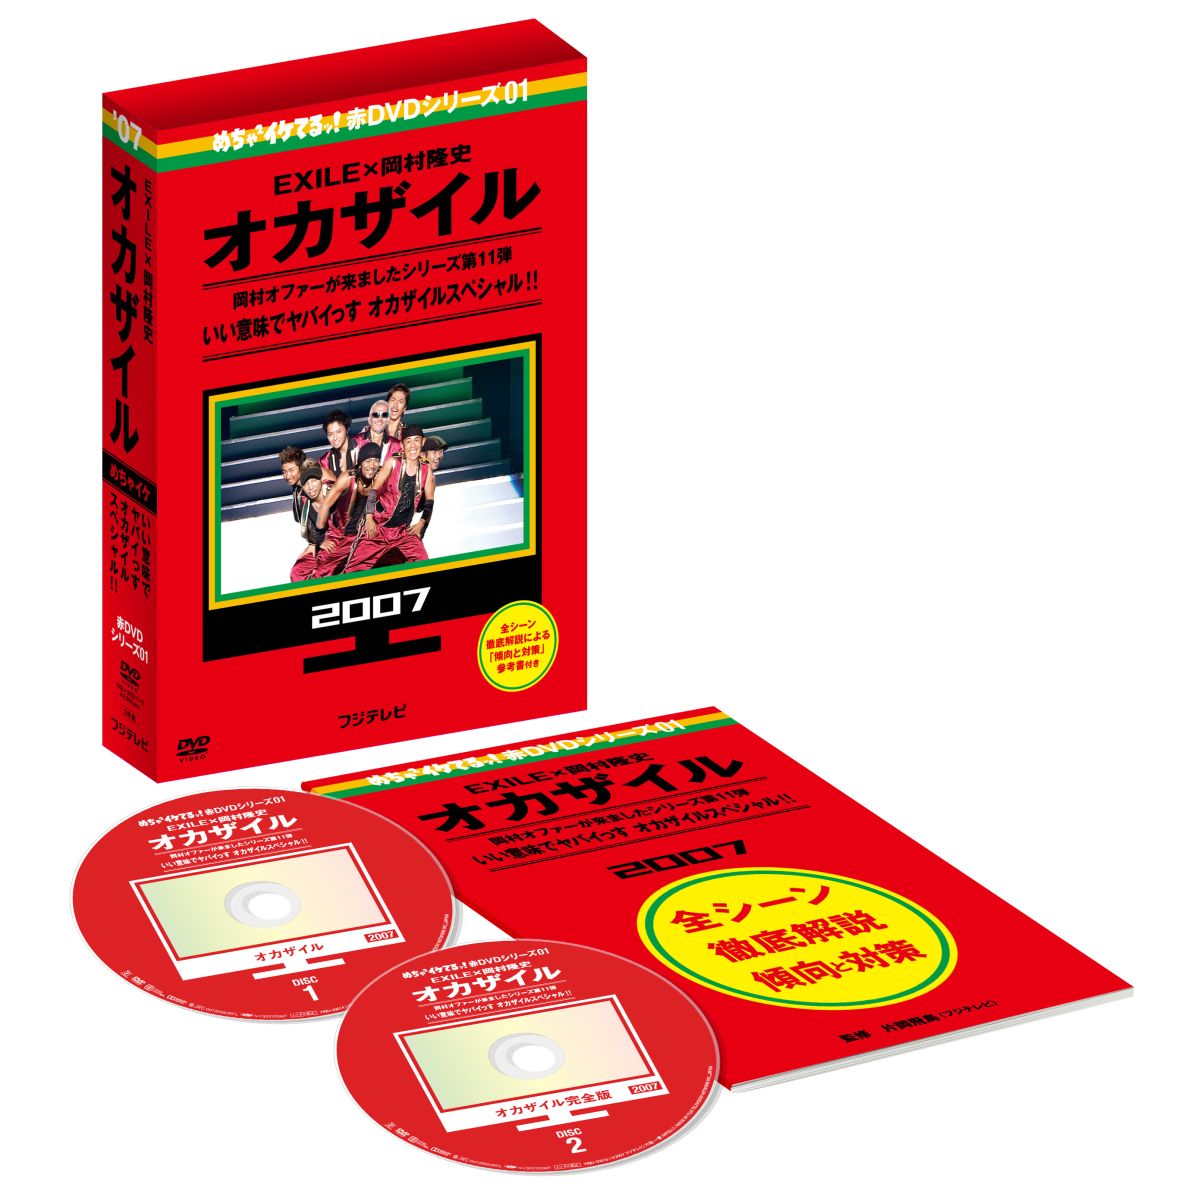 楽天ブックス: めちゃ×2イケてるッ! 赤DVD第1巻 オカザイル - EXILE 